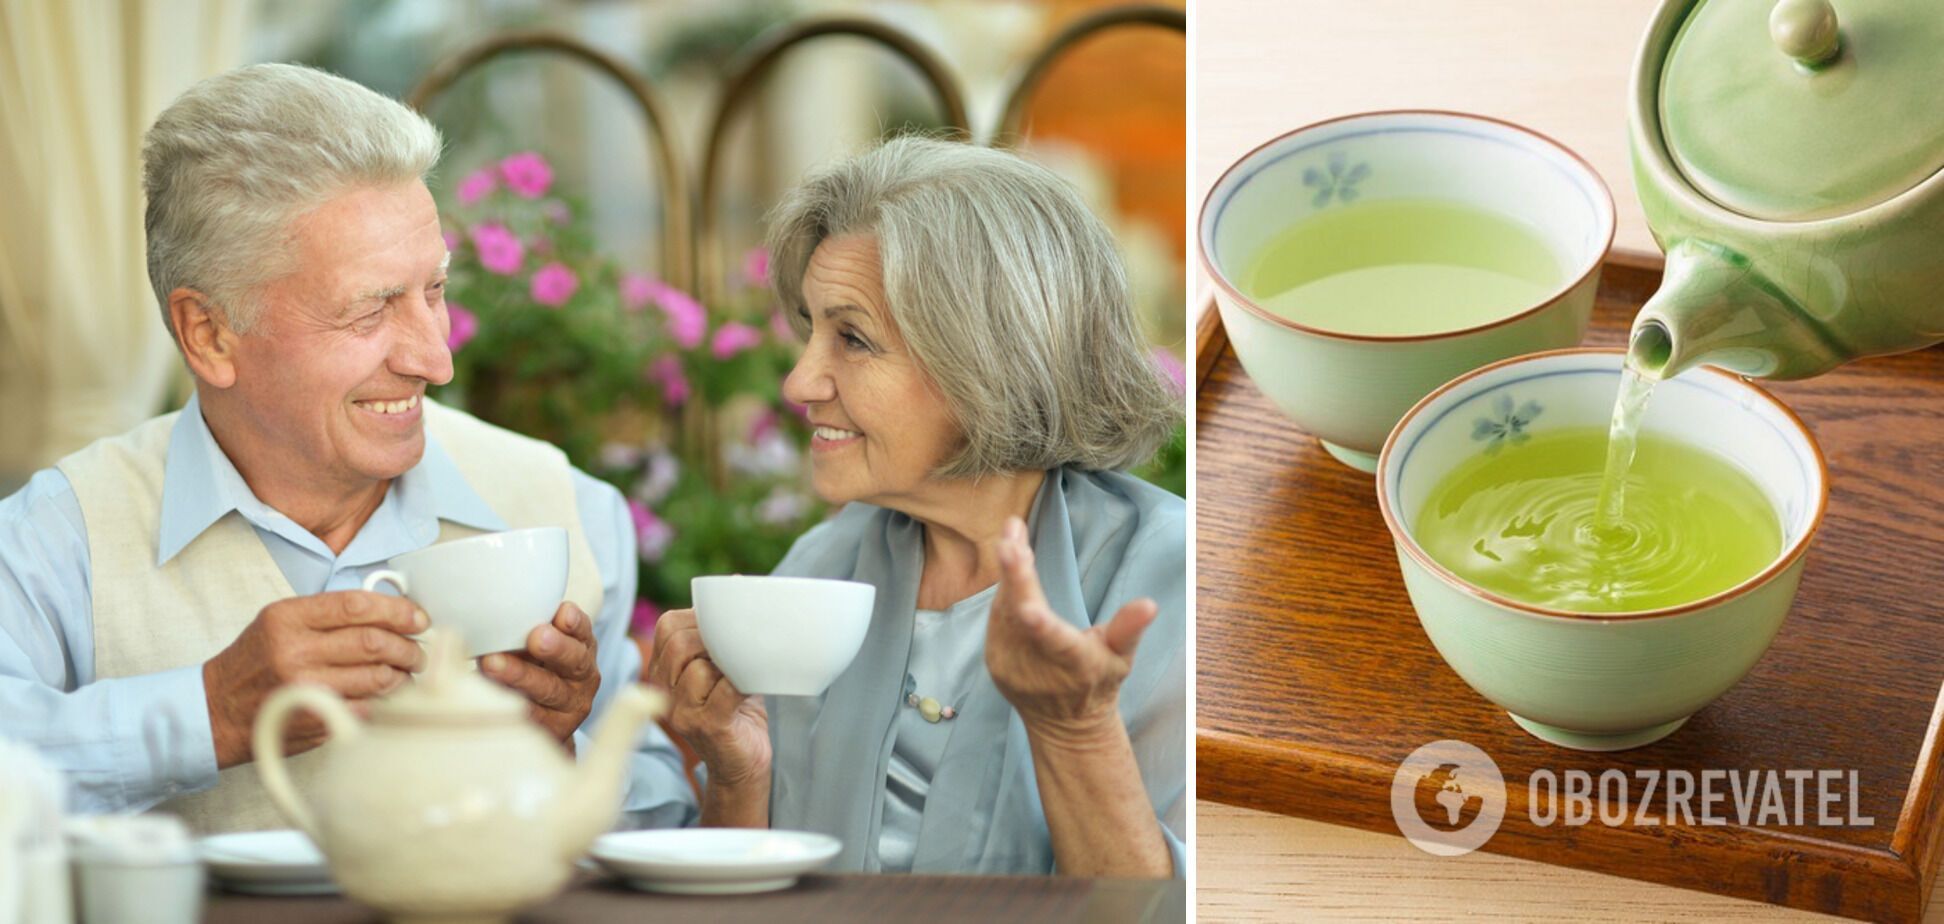 Зеленый чай особенно полезен для предотвращения риска инсульта